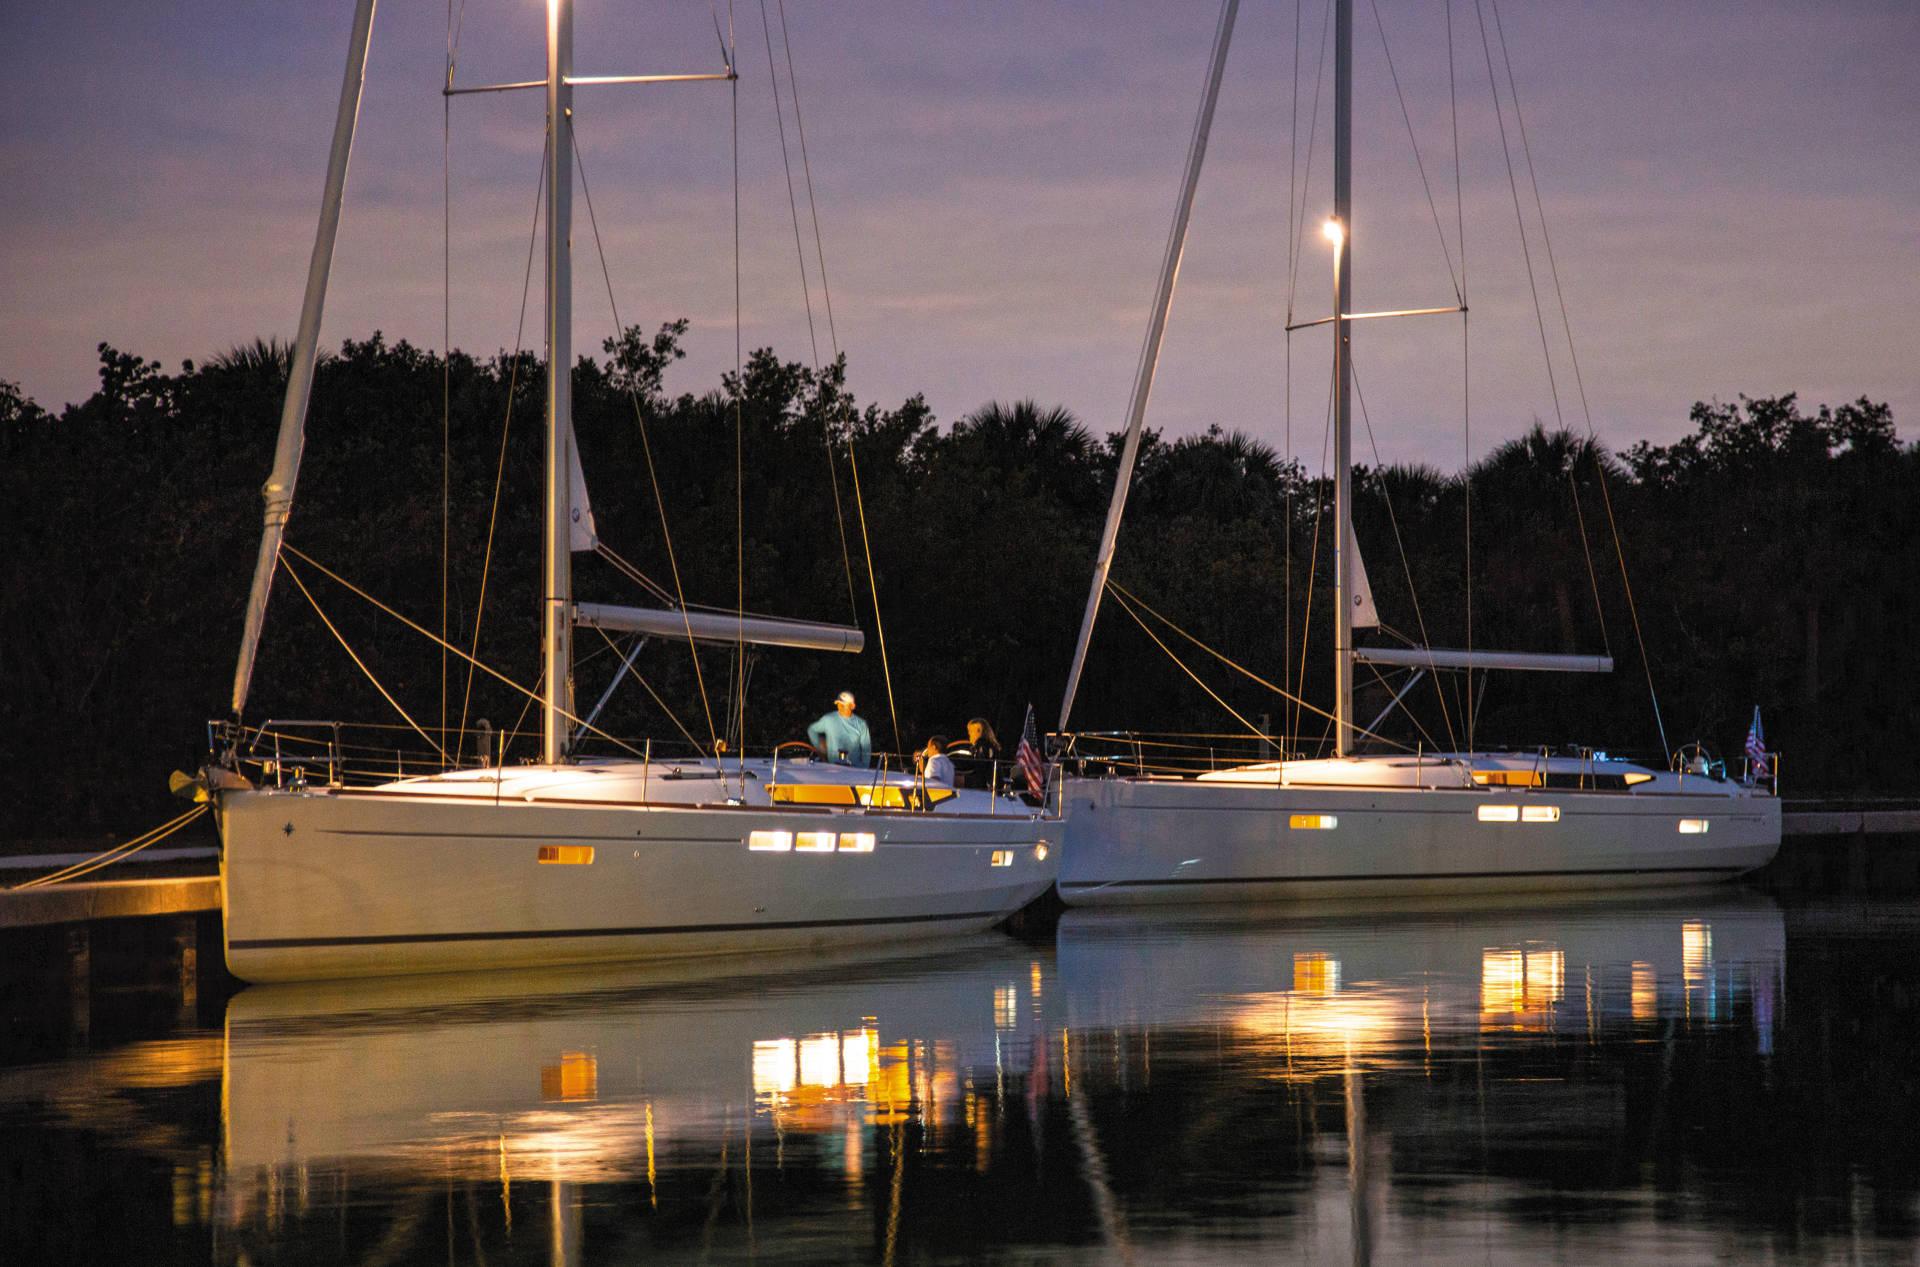 Zwei Segelyachten liegen in der Dämmerung nebeneinander an einem Dock, leuchtende Lichter spiegeln sich im ruhigen Wasser und im Hintergrund ist eine dichte Baumreihe zu sehen.